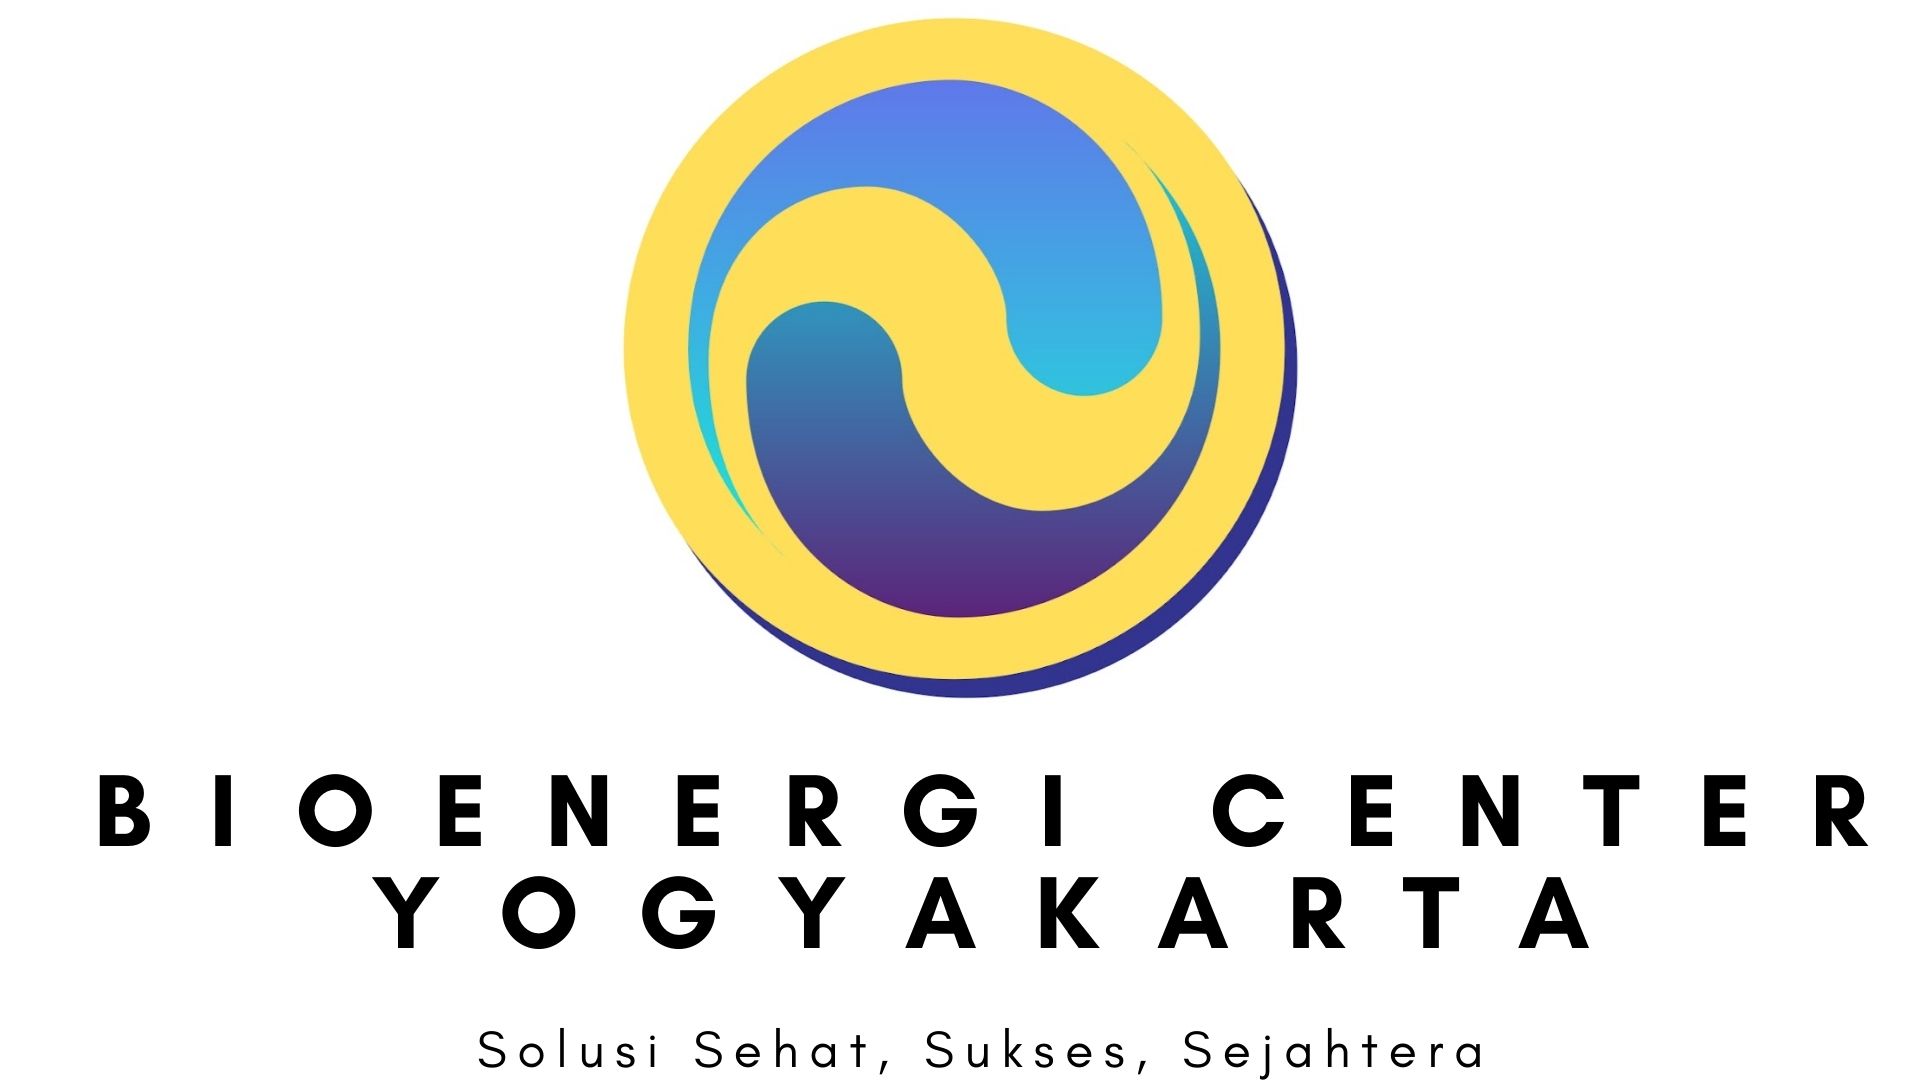 Bioenergi Center Yogyakarta: Solusi Sehat, Sukses, Sejahtera